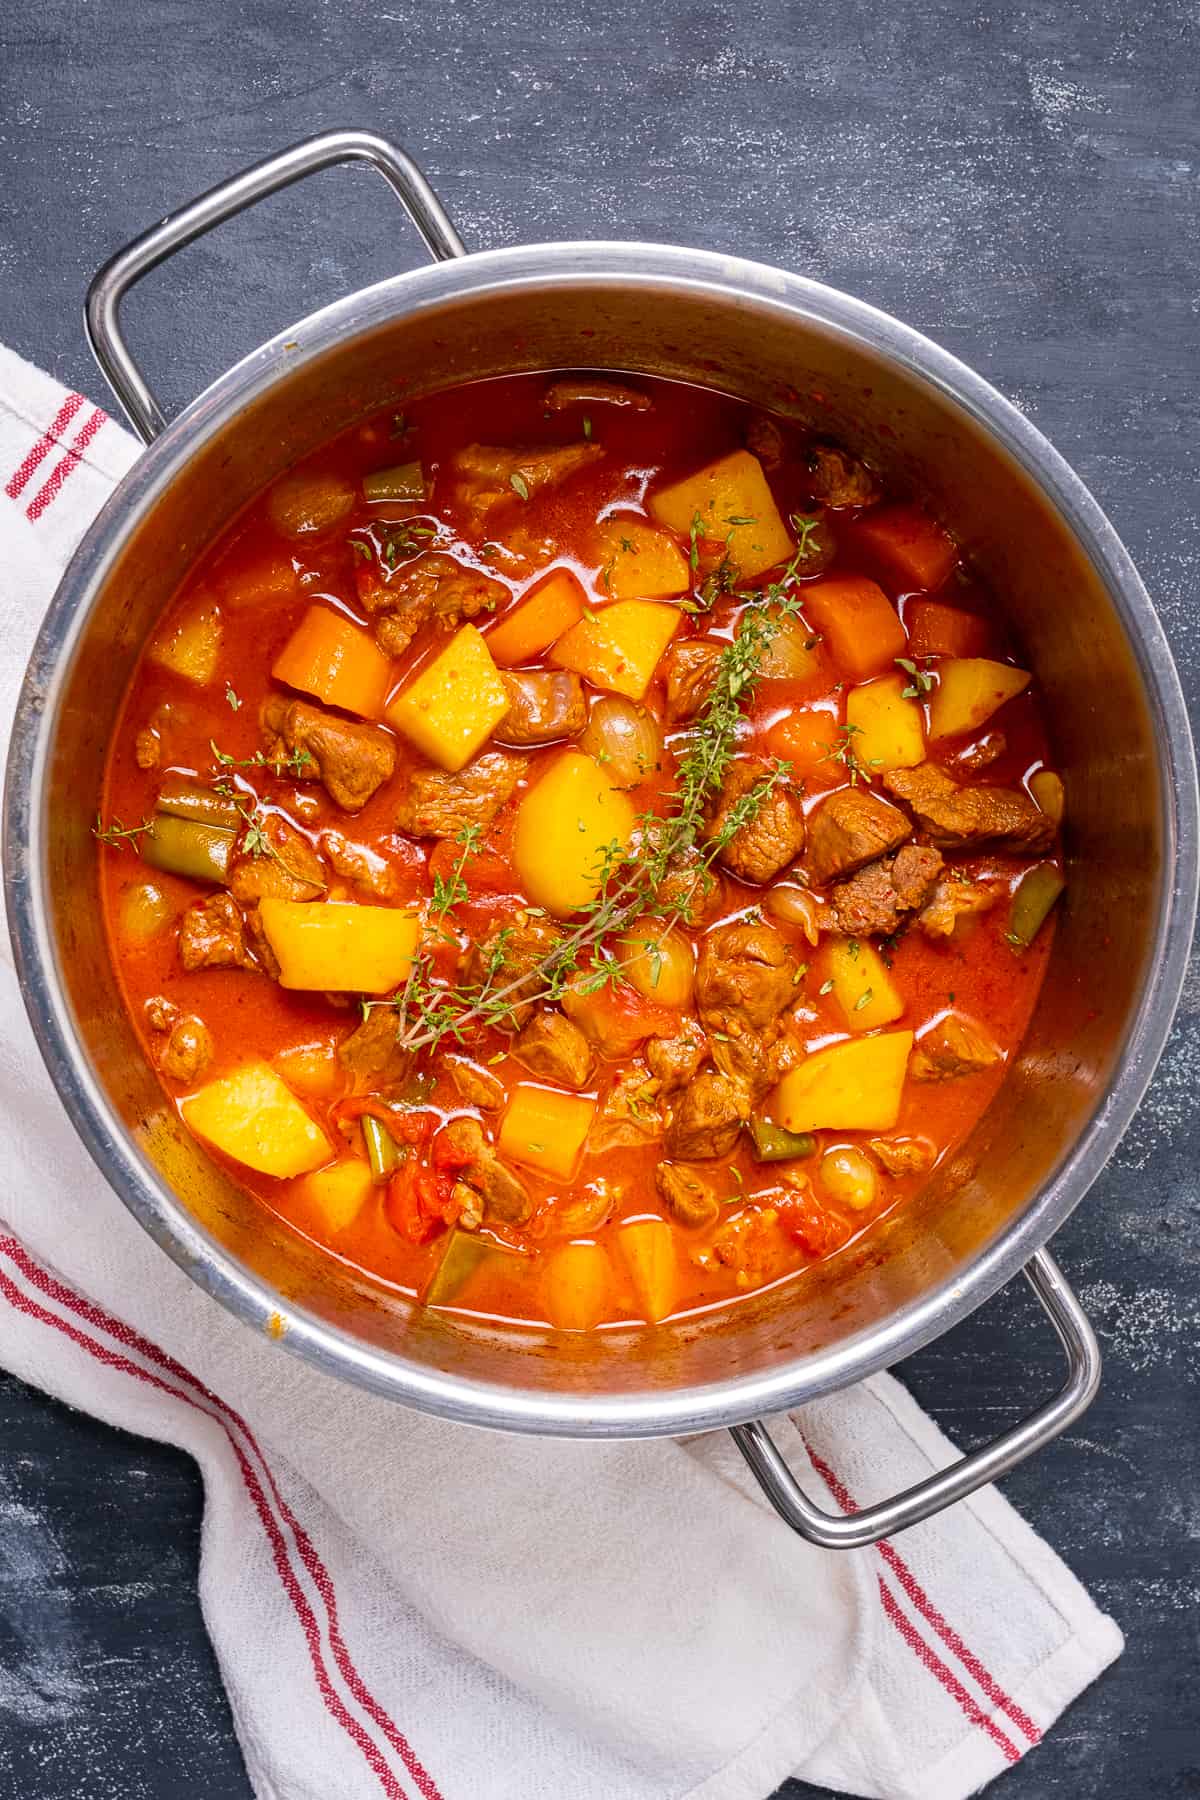 用平底锅炖羊肉配土豆和胡萝卜。